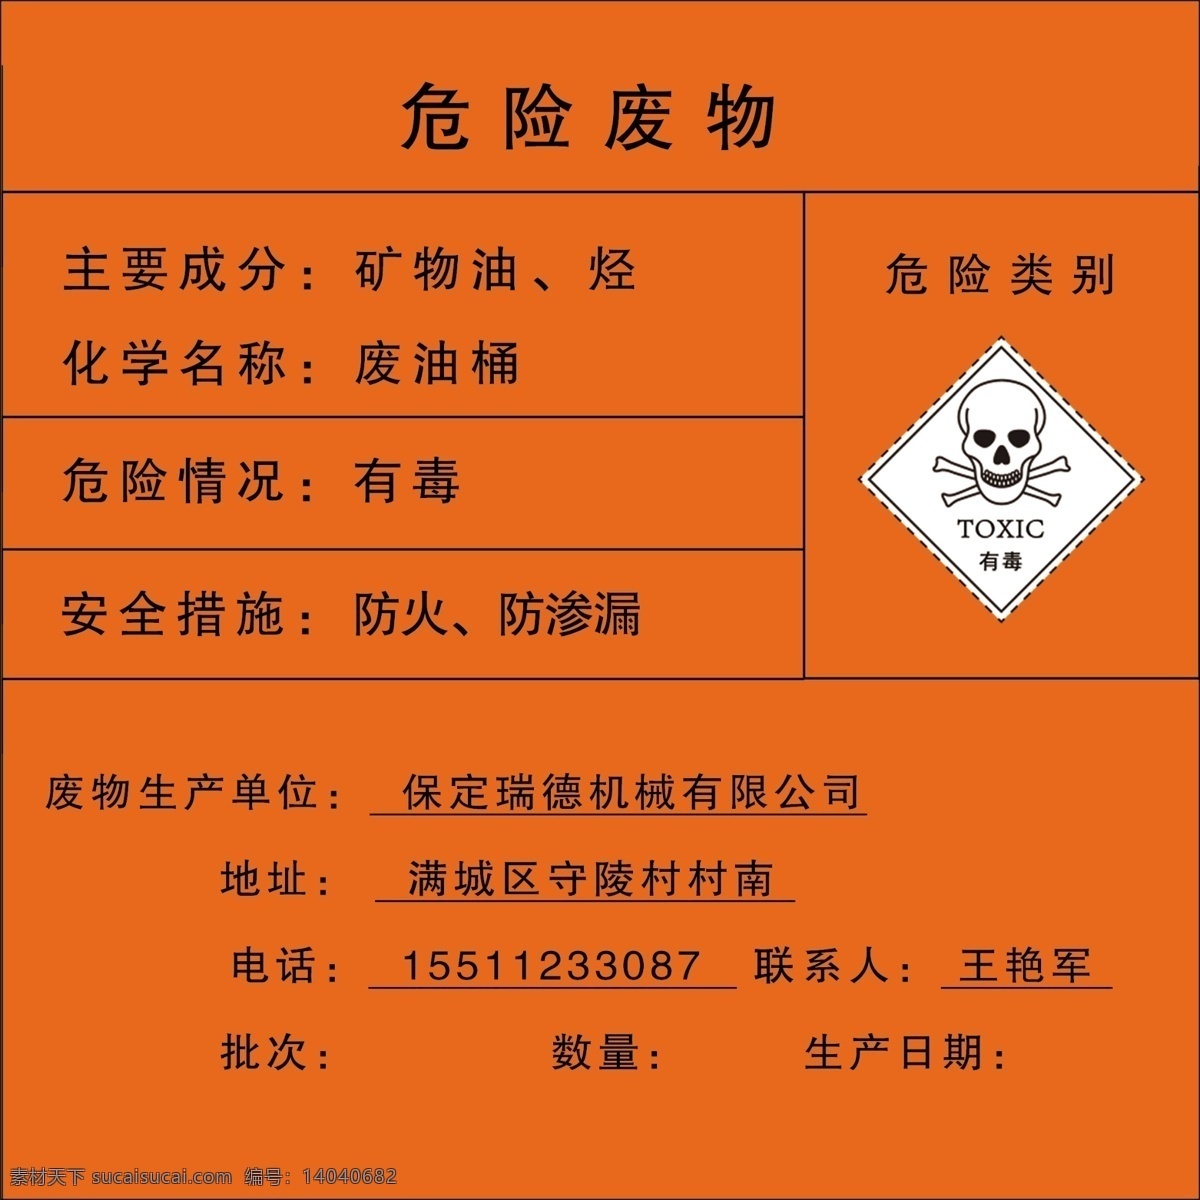 危险 废物 废 油桶 危险废物 废棉纱 有毒 安全措施 室外广告设计